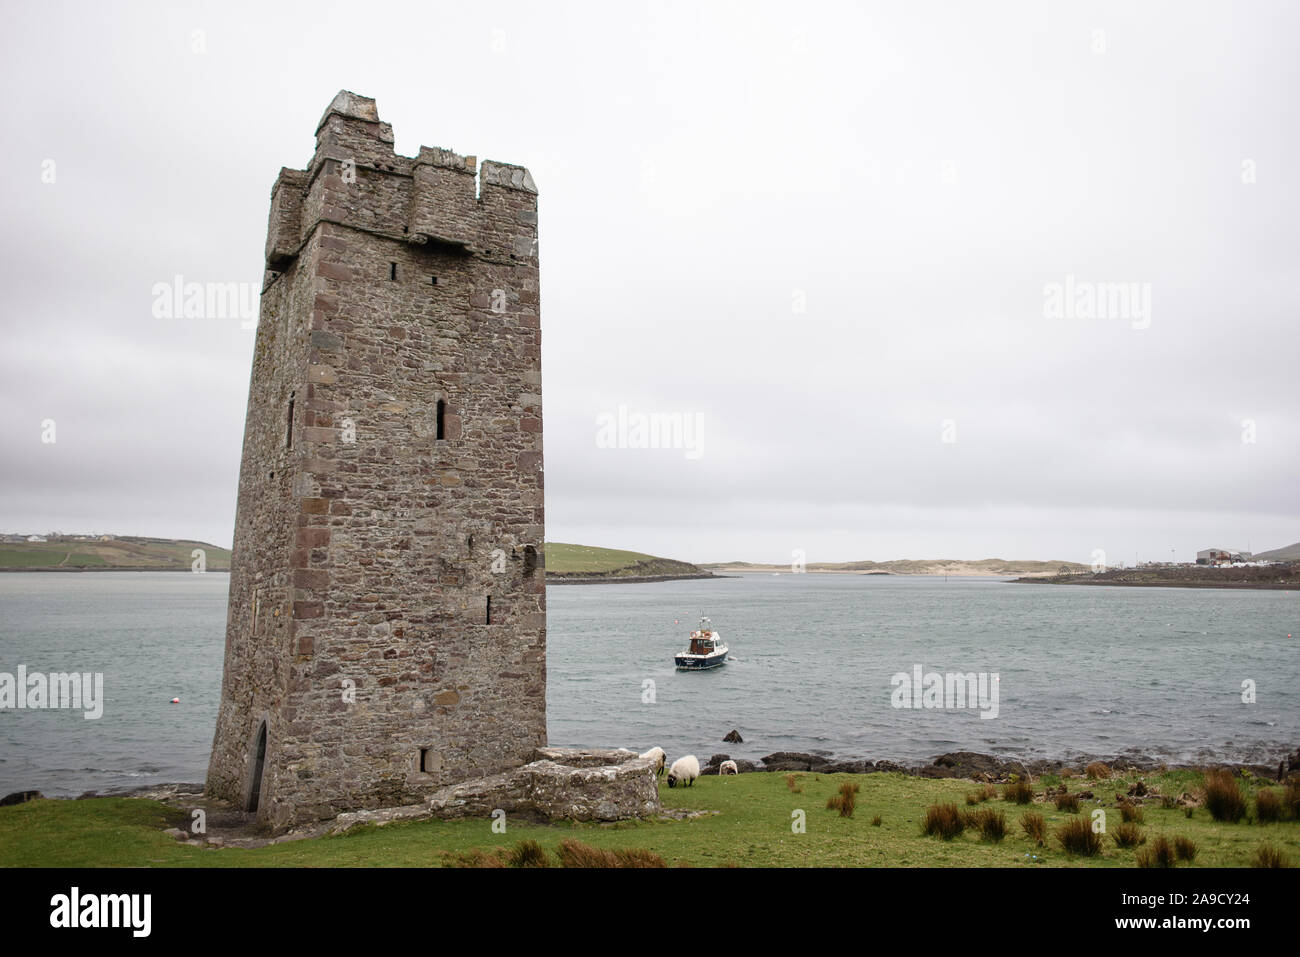 Castello rovina sul ciglio della strada in Irlanda Foto Stock